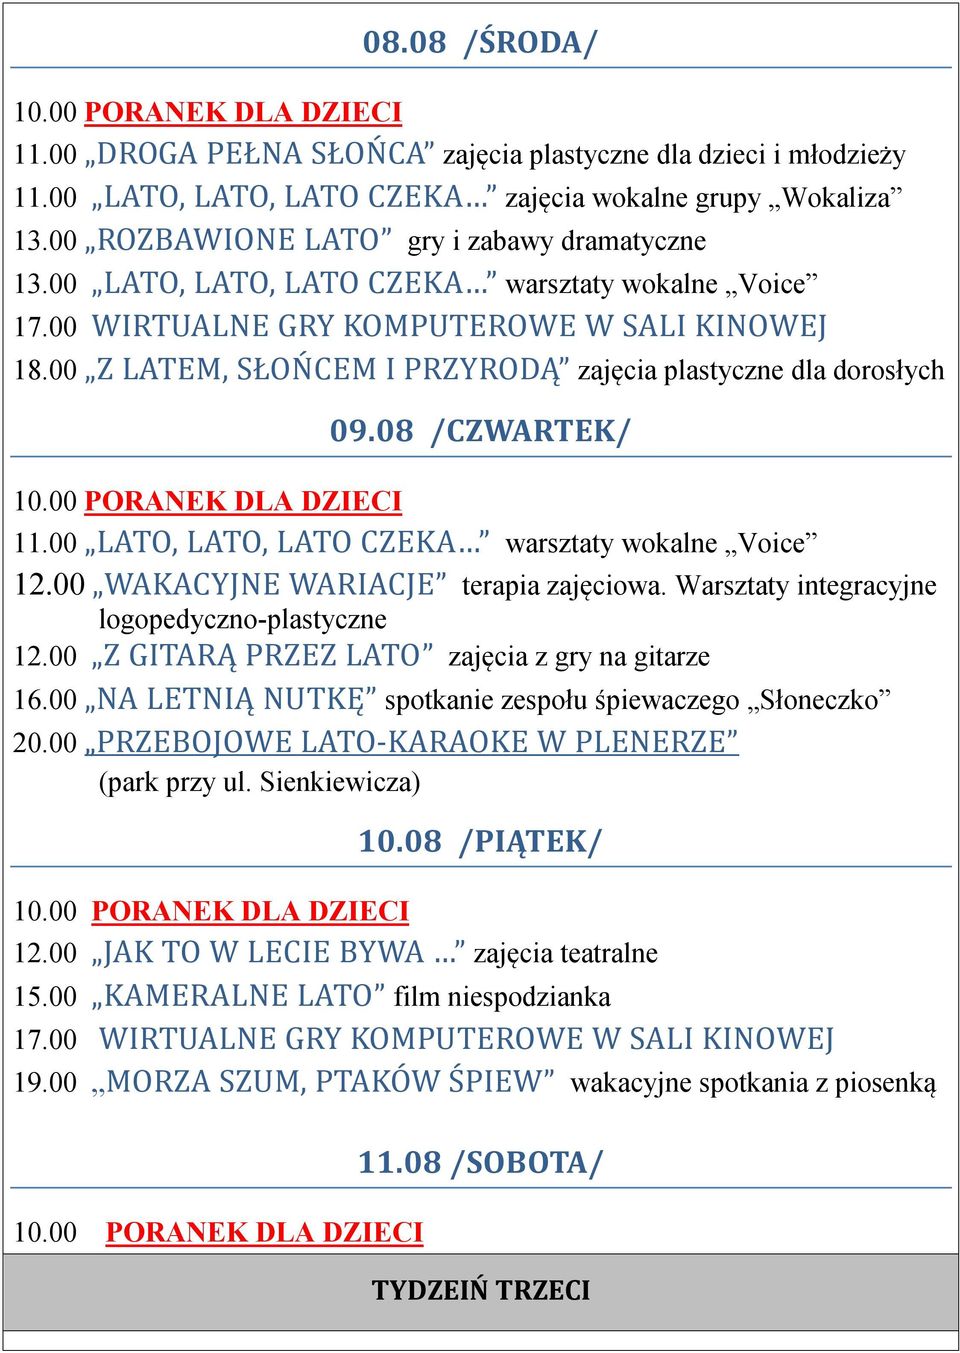 00 LATO, LATO, LATO CZEKA warsztaty wokalne Voice 09.08 /CZWARTEK/ 16.